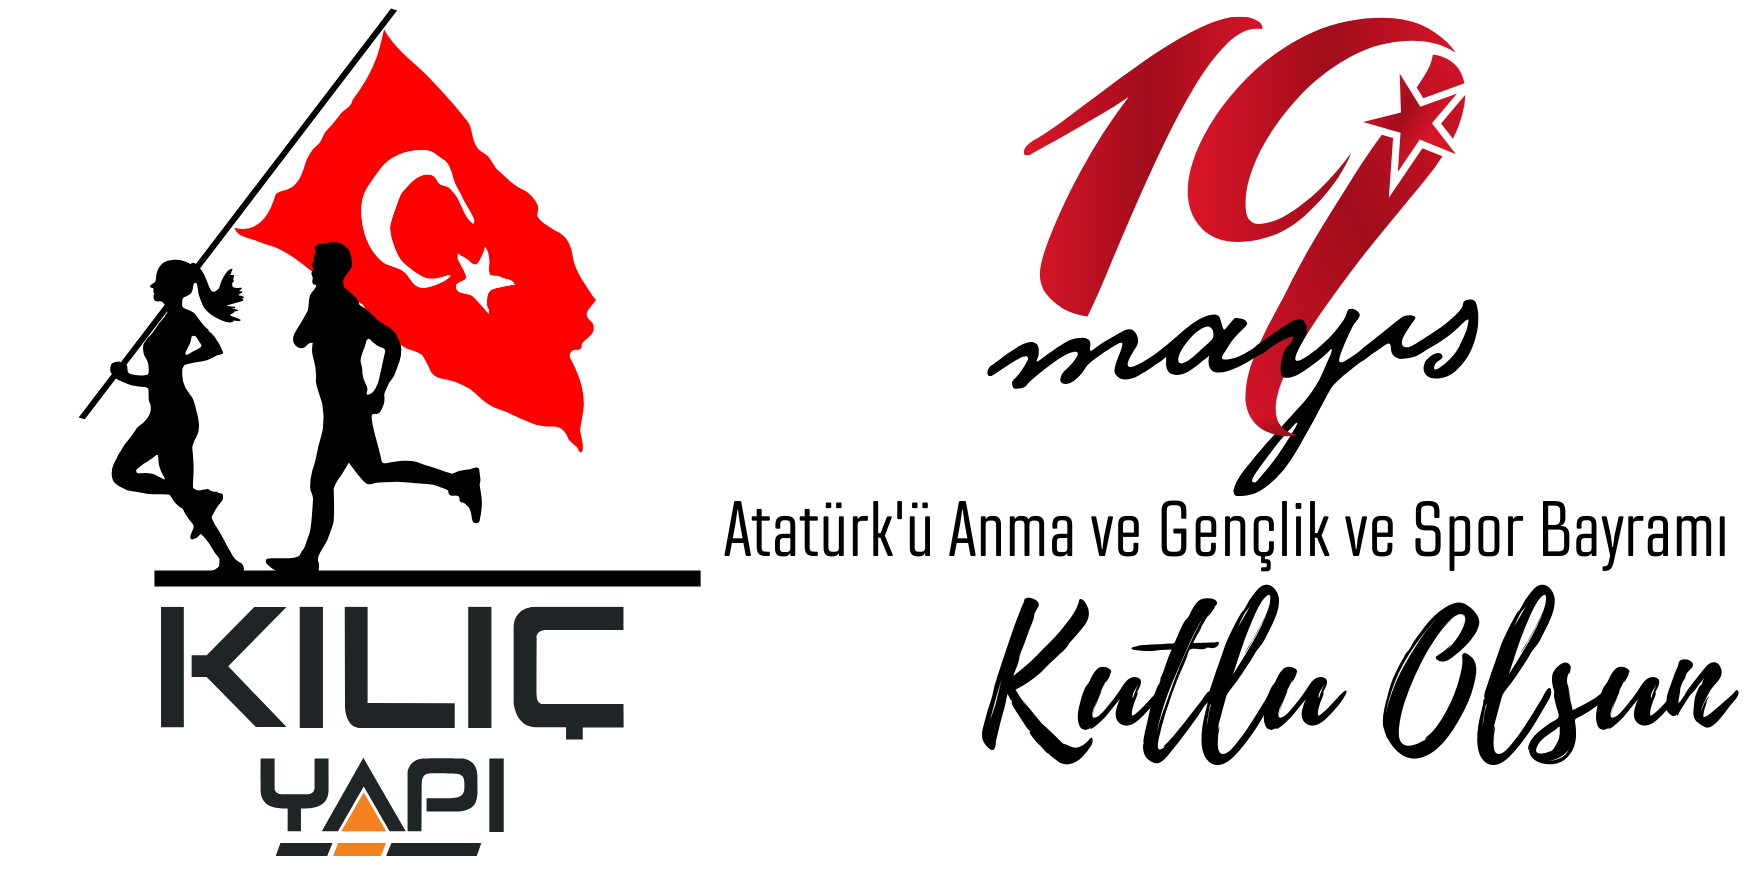 Kılıç Yapı Salih Kılıç ve kardeşleri  19 Mayıs Atatürk'ü Anma Gençlik ve Spor Bayramı Mesajı